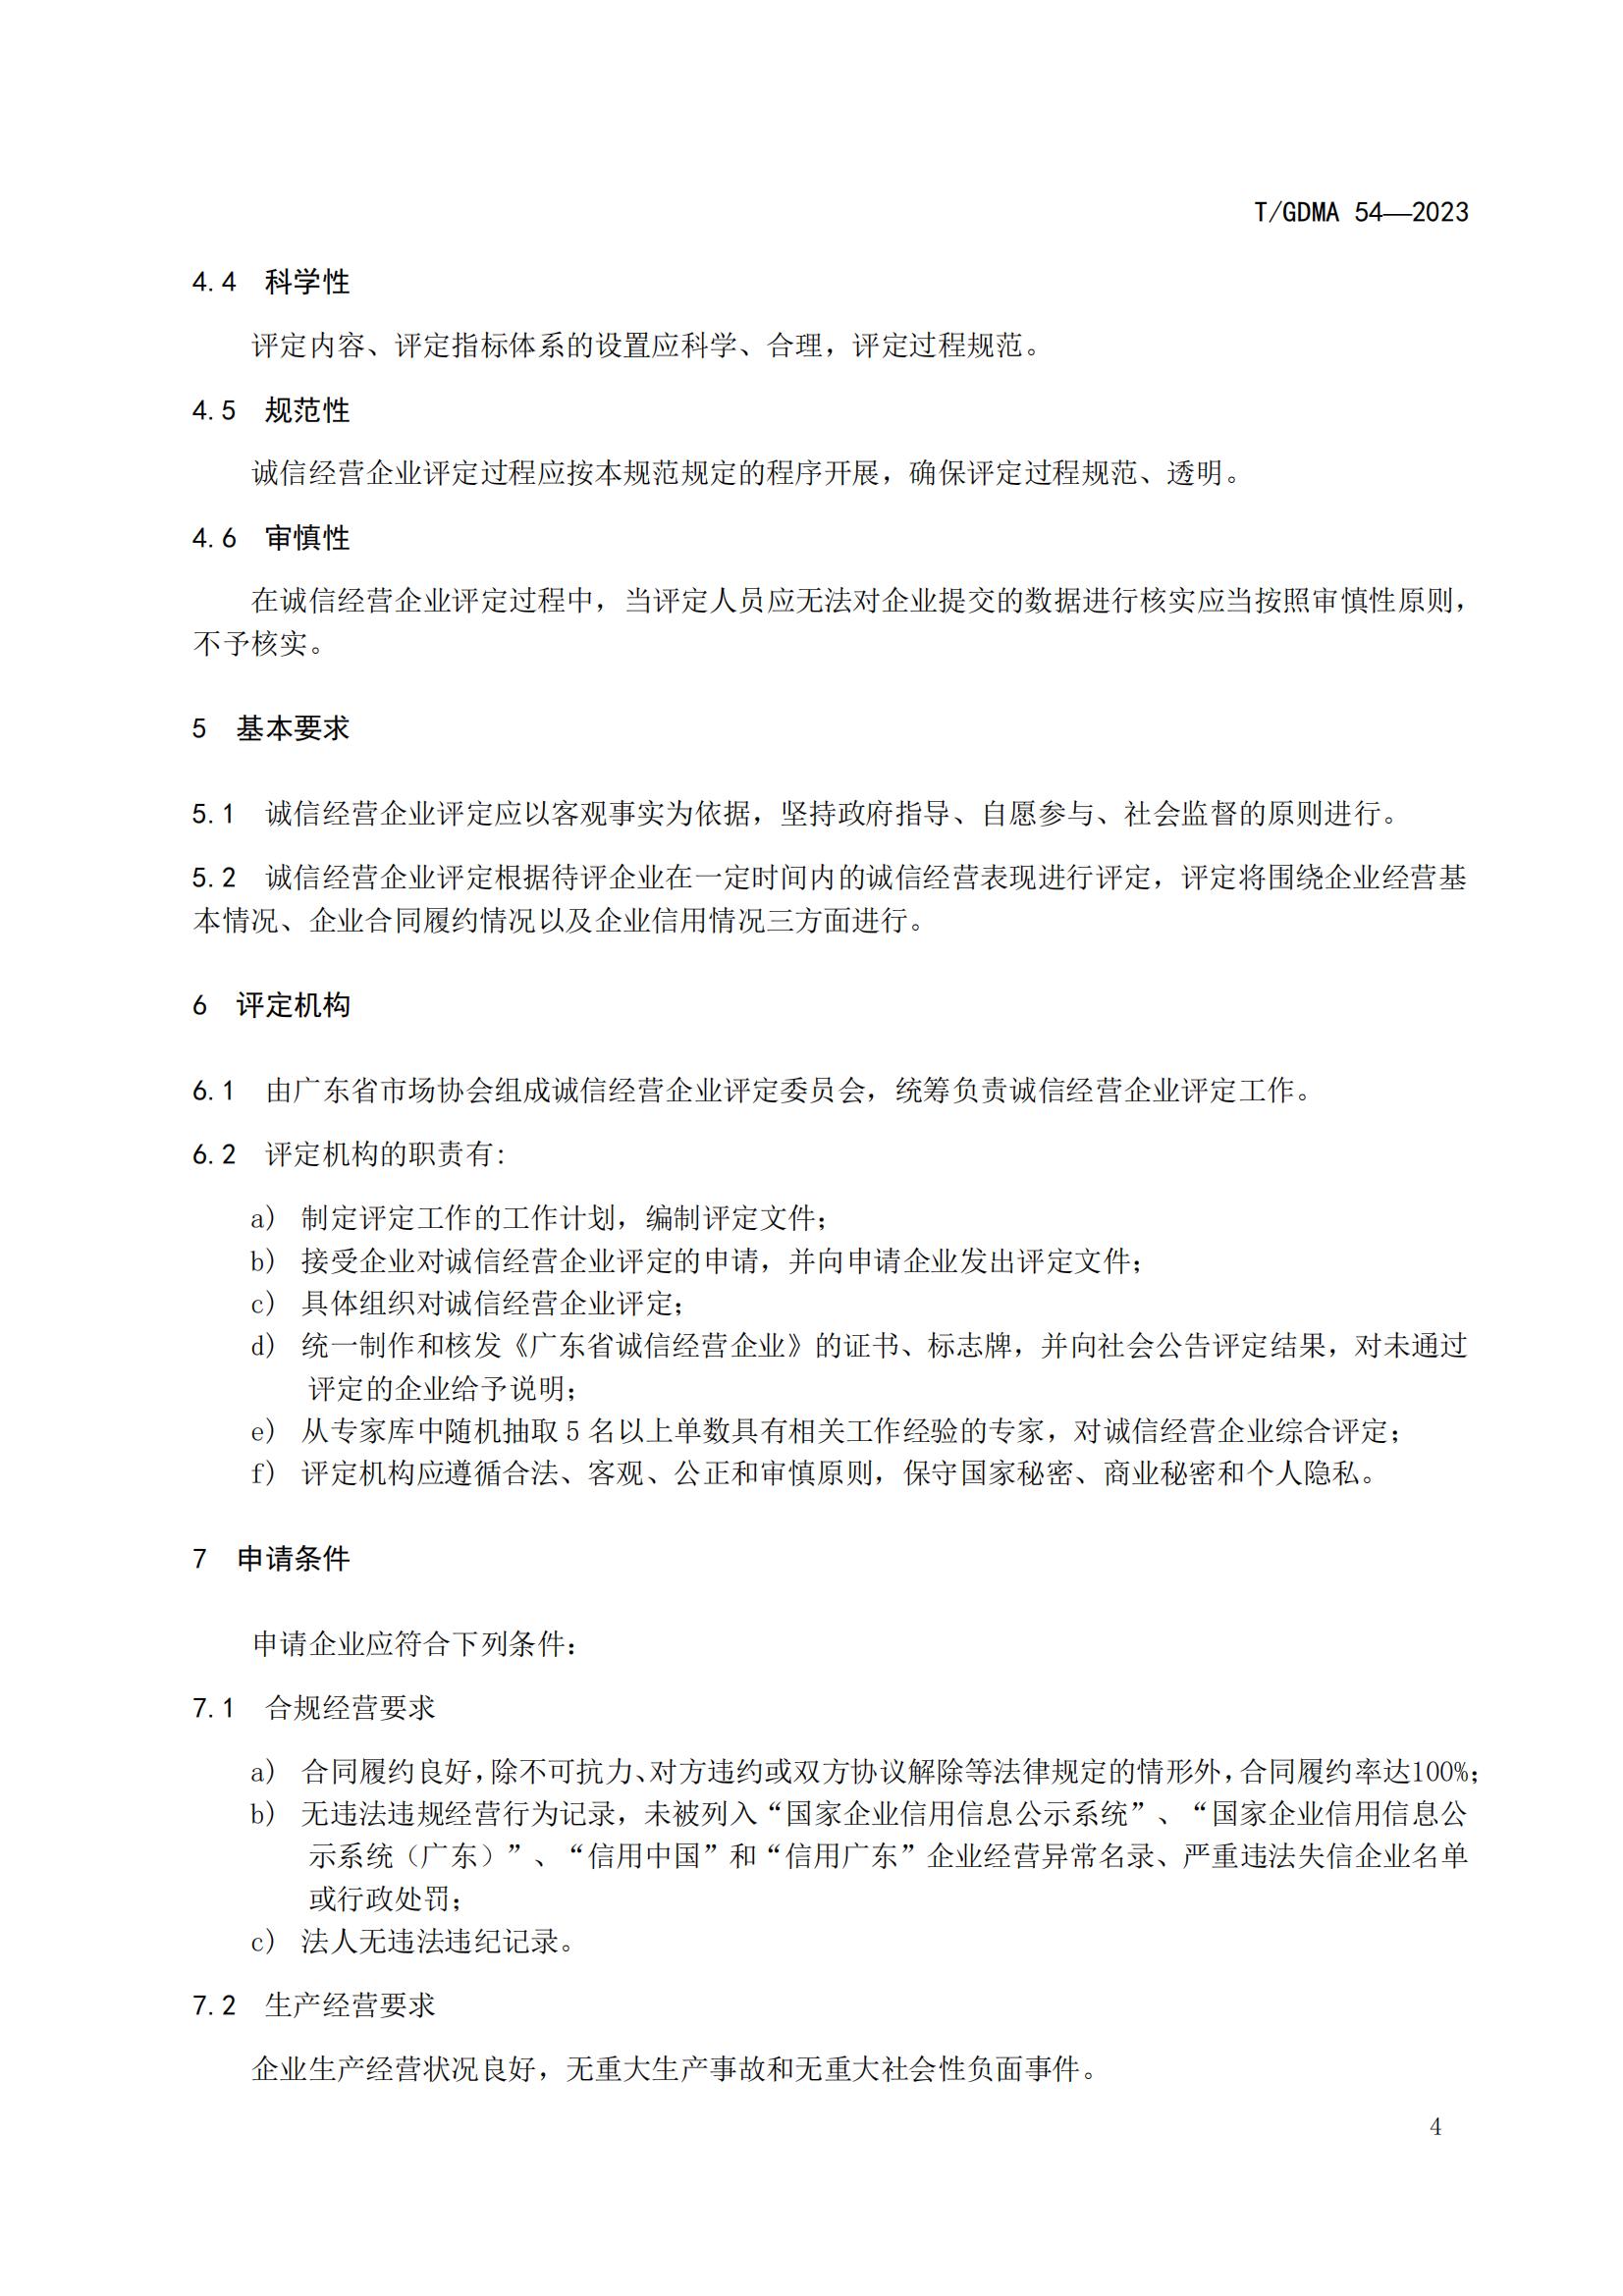 20230427 广东省诚信经营企业评定规范意见（发布稿）(1)(1)_04.jpg